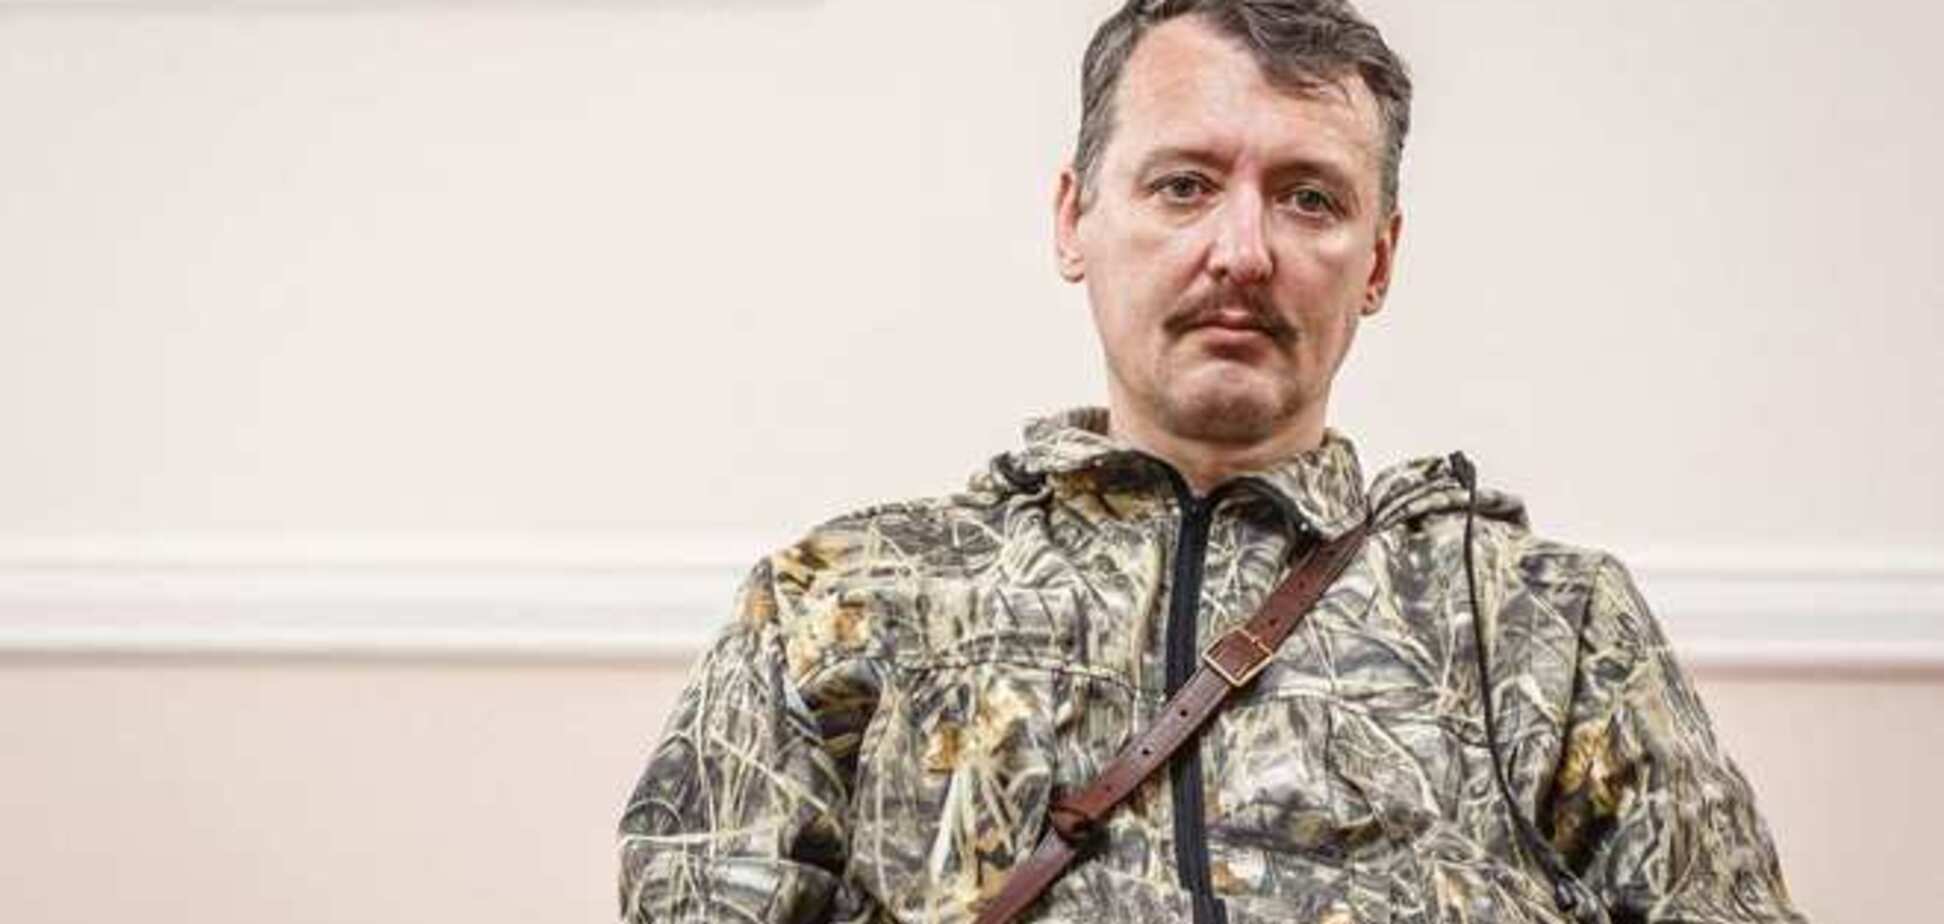 Гиркин заявил, что в Донецке 'свои' же собирают на него компромат с целью шантажа